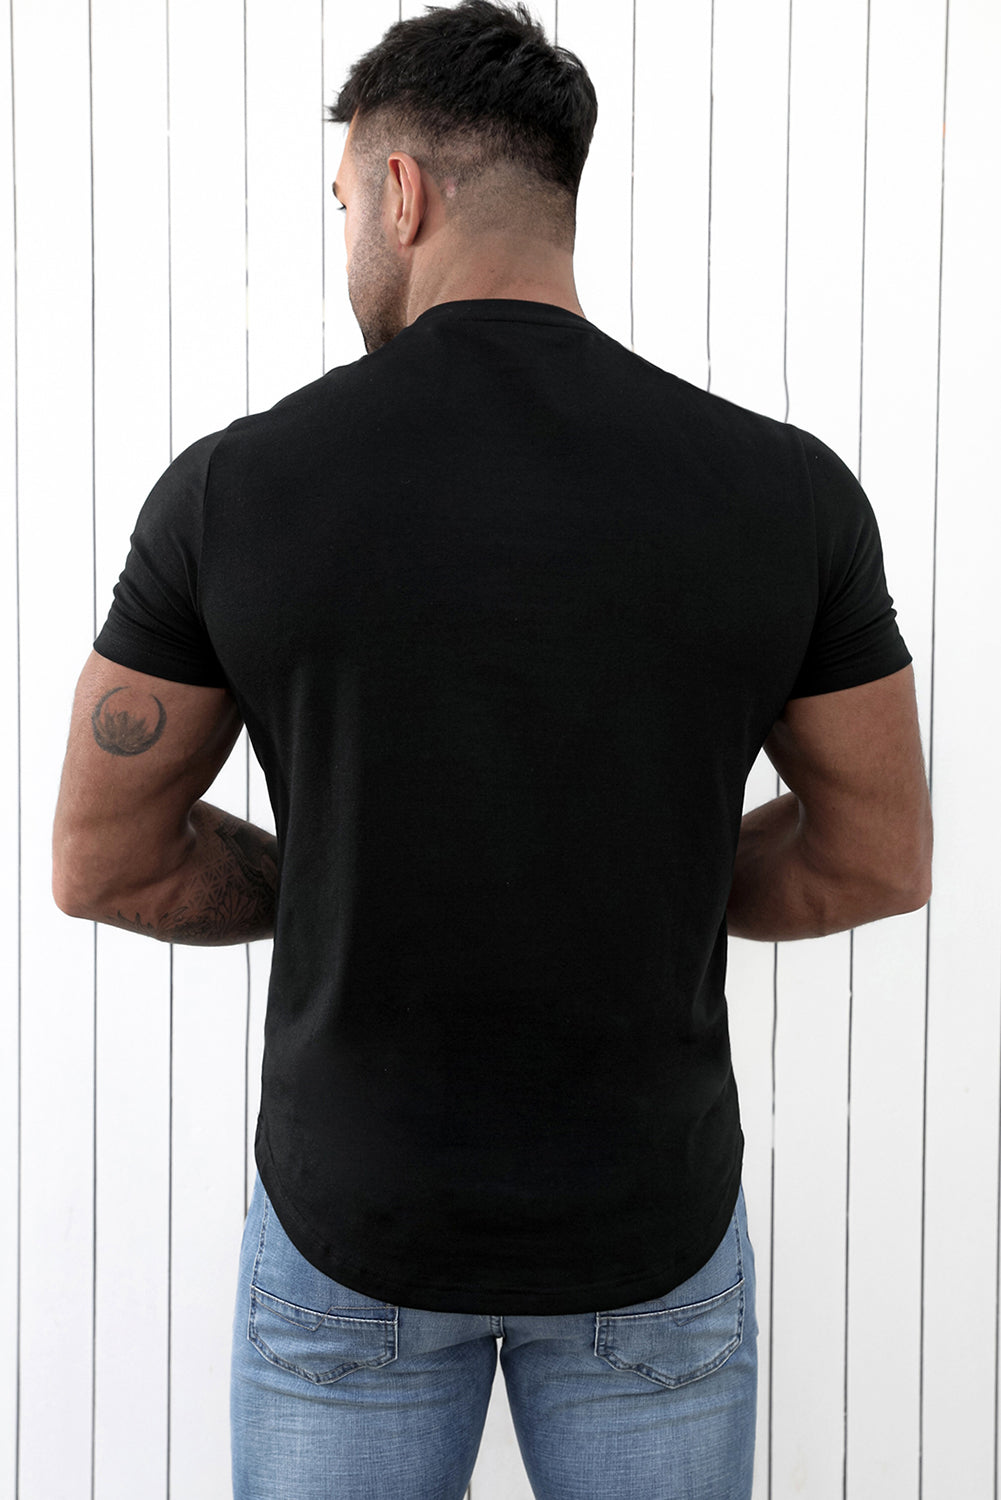 Black American Flag Skull Graphic Print Short Sleeve Men's T Shirt Men's Tops JT's Designer Fashion